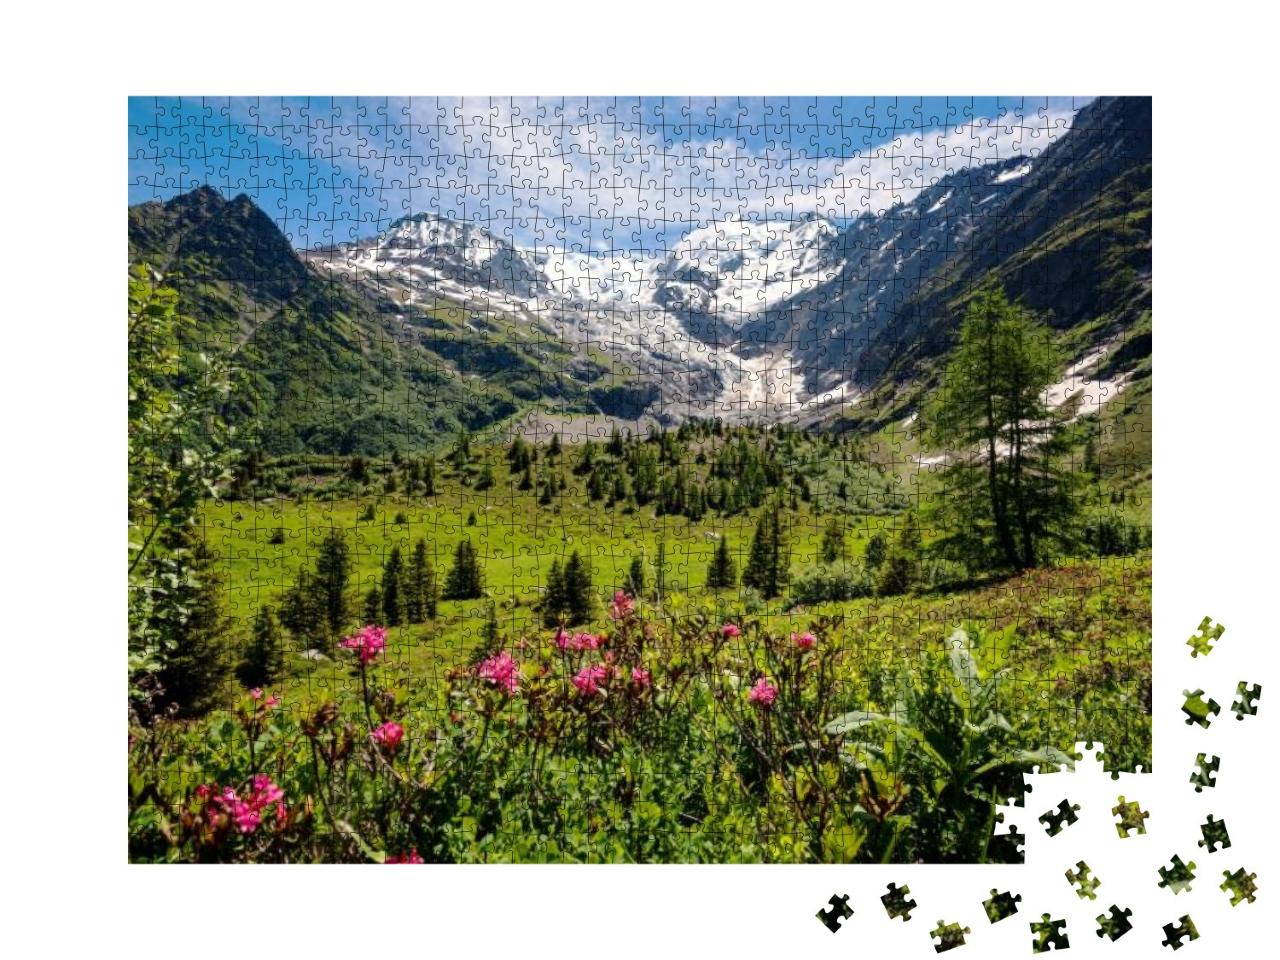 Puzzle 1000 Teile „Tour du Mont Blanc in den französischen Alpen“